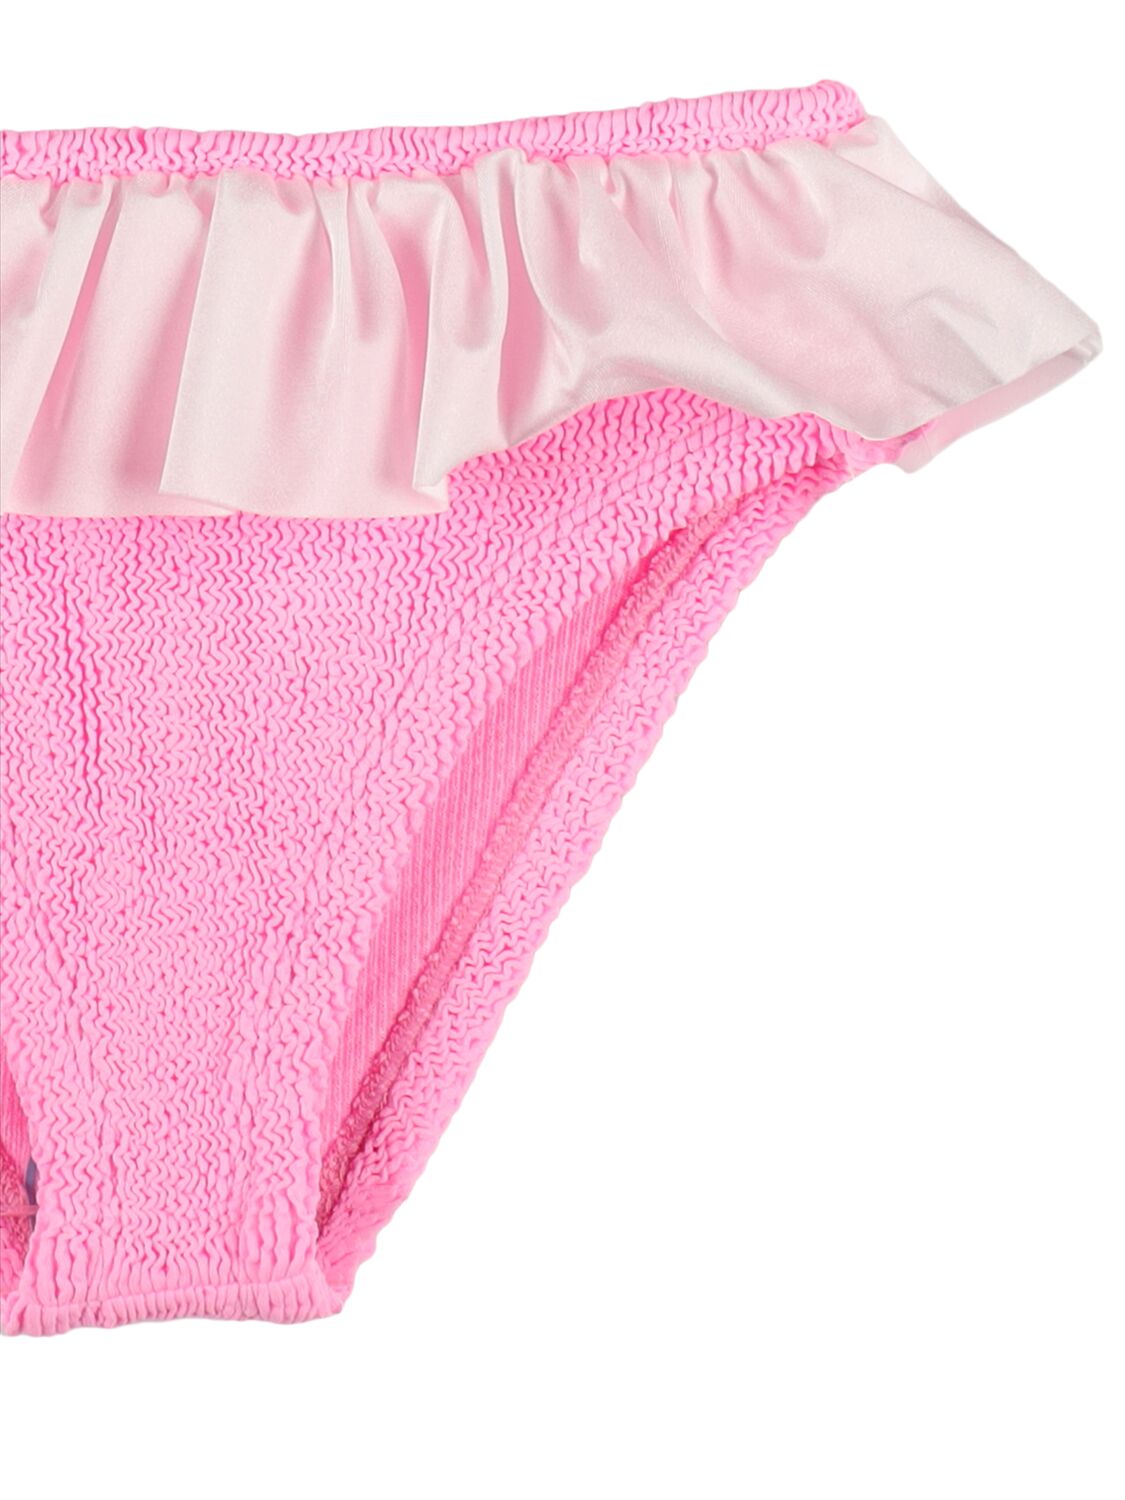 Shop Hunza G Lycra Bikini W/ Ruffle In Pink